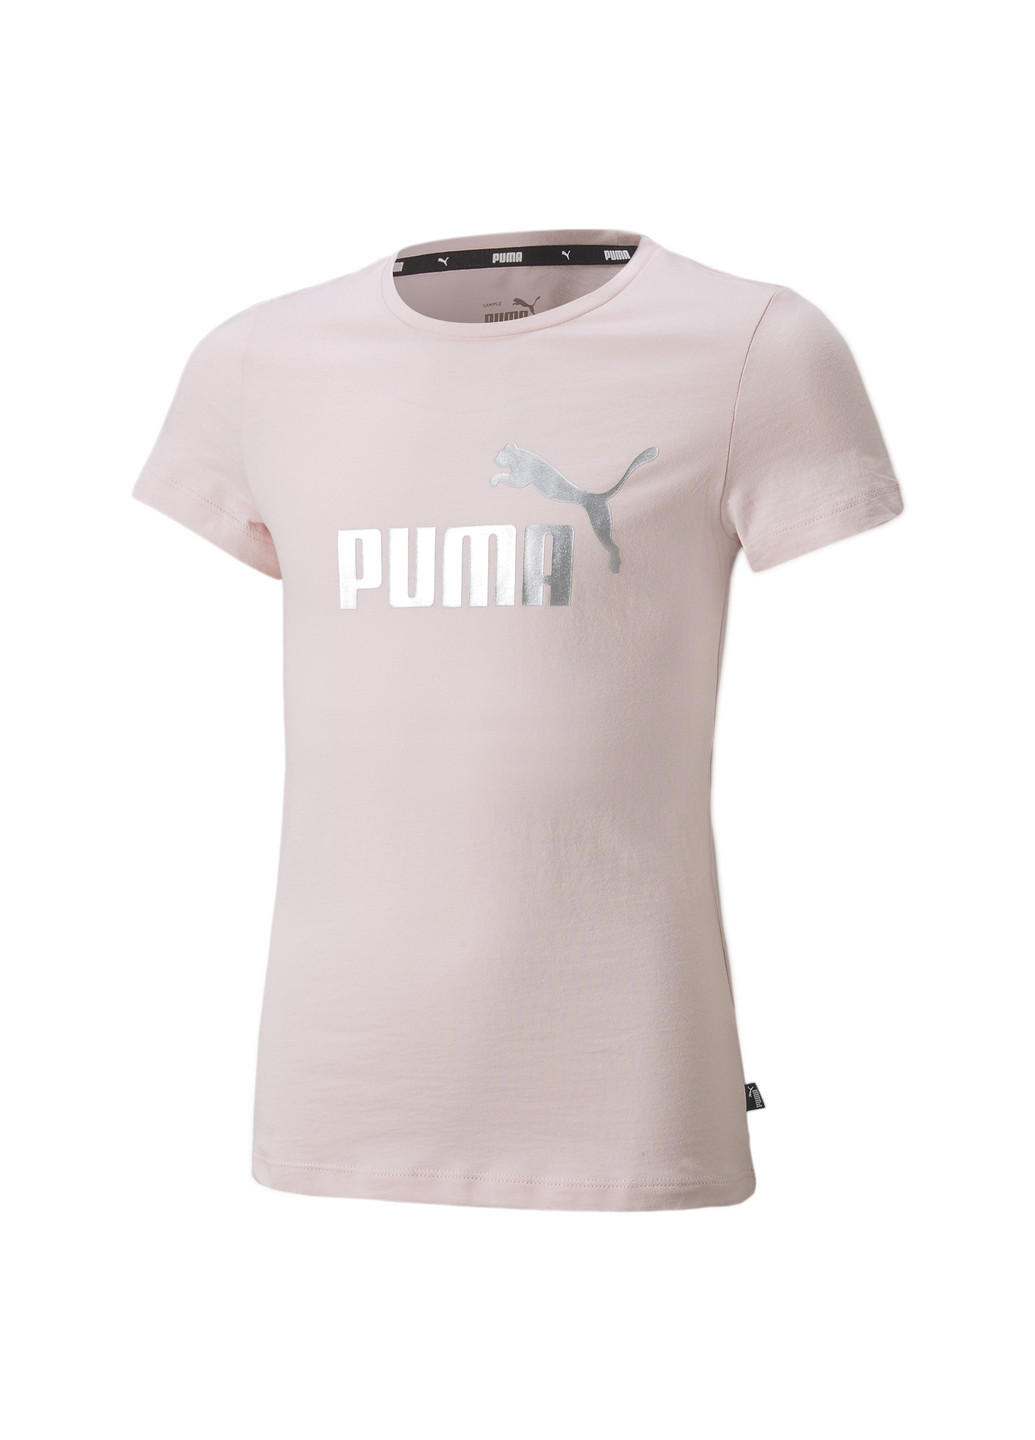 Детская футболка Essentials+ Logo Youth Tee Puma однотонная розовая спортивная хлопок